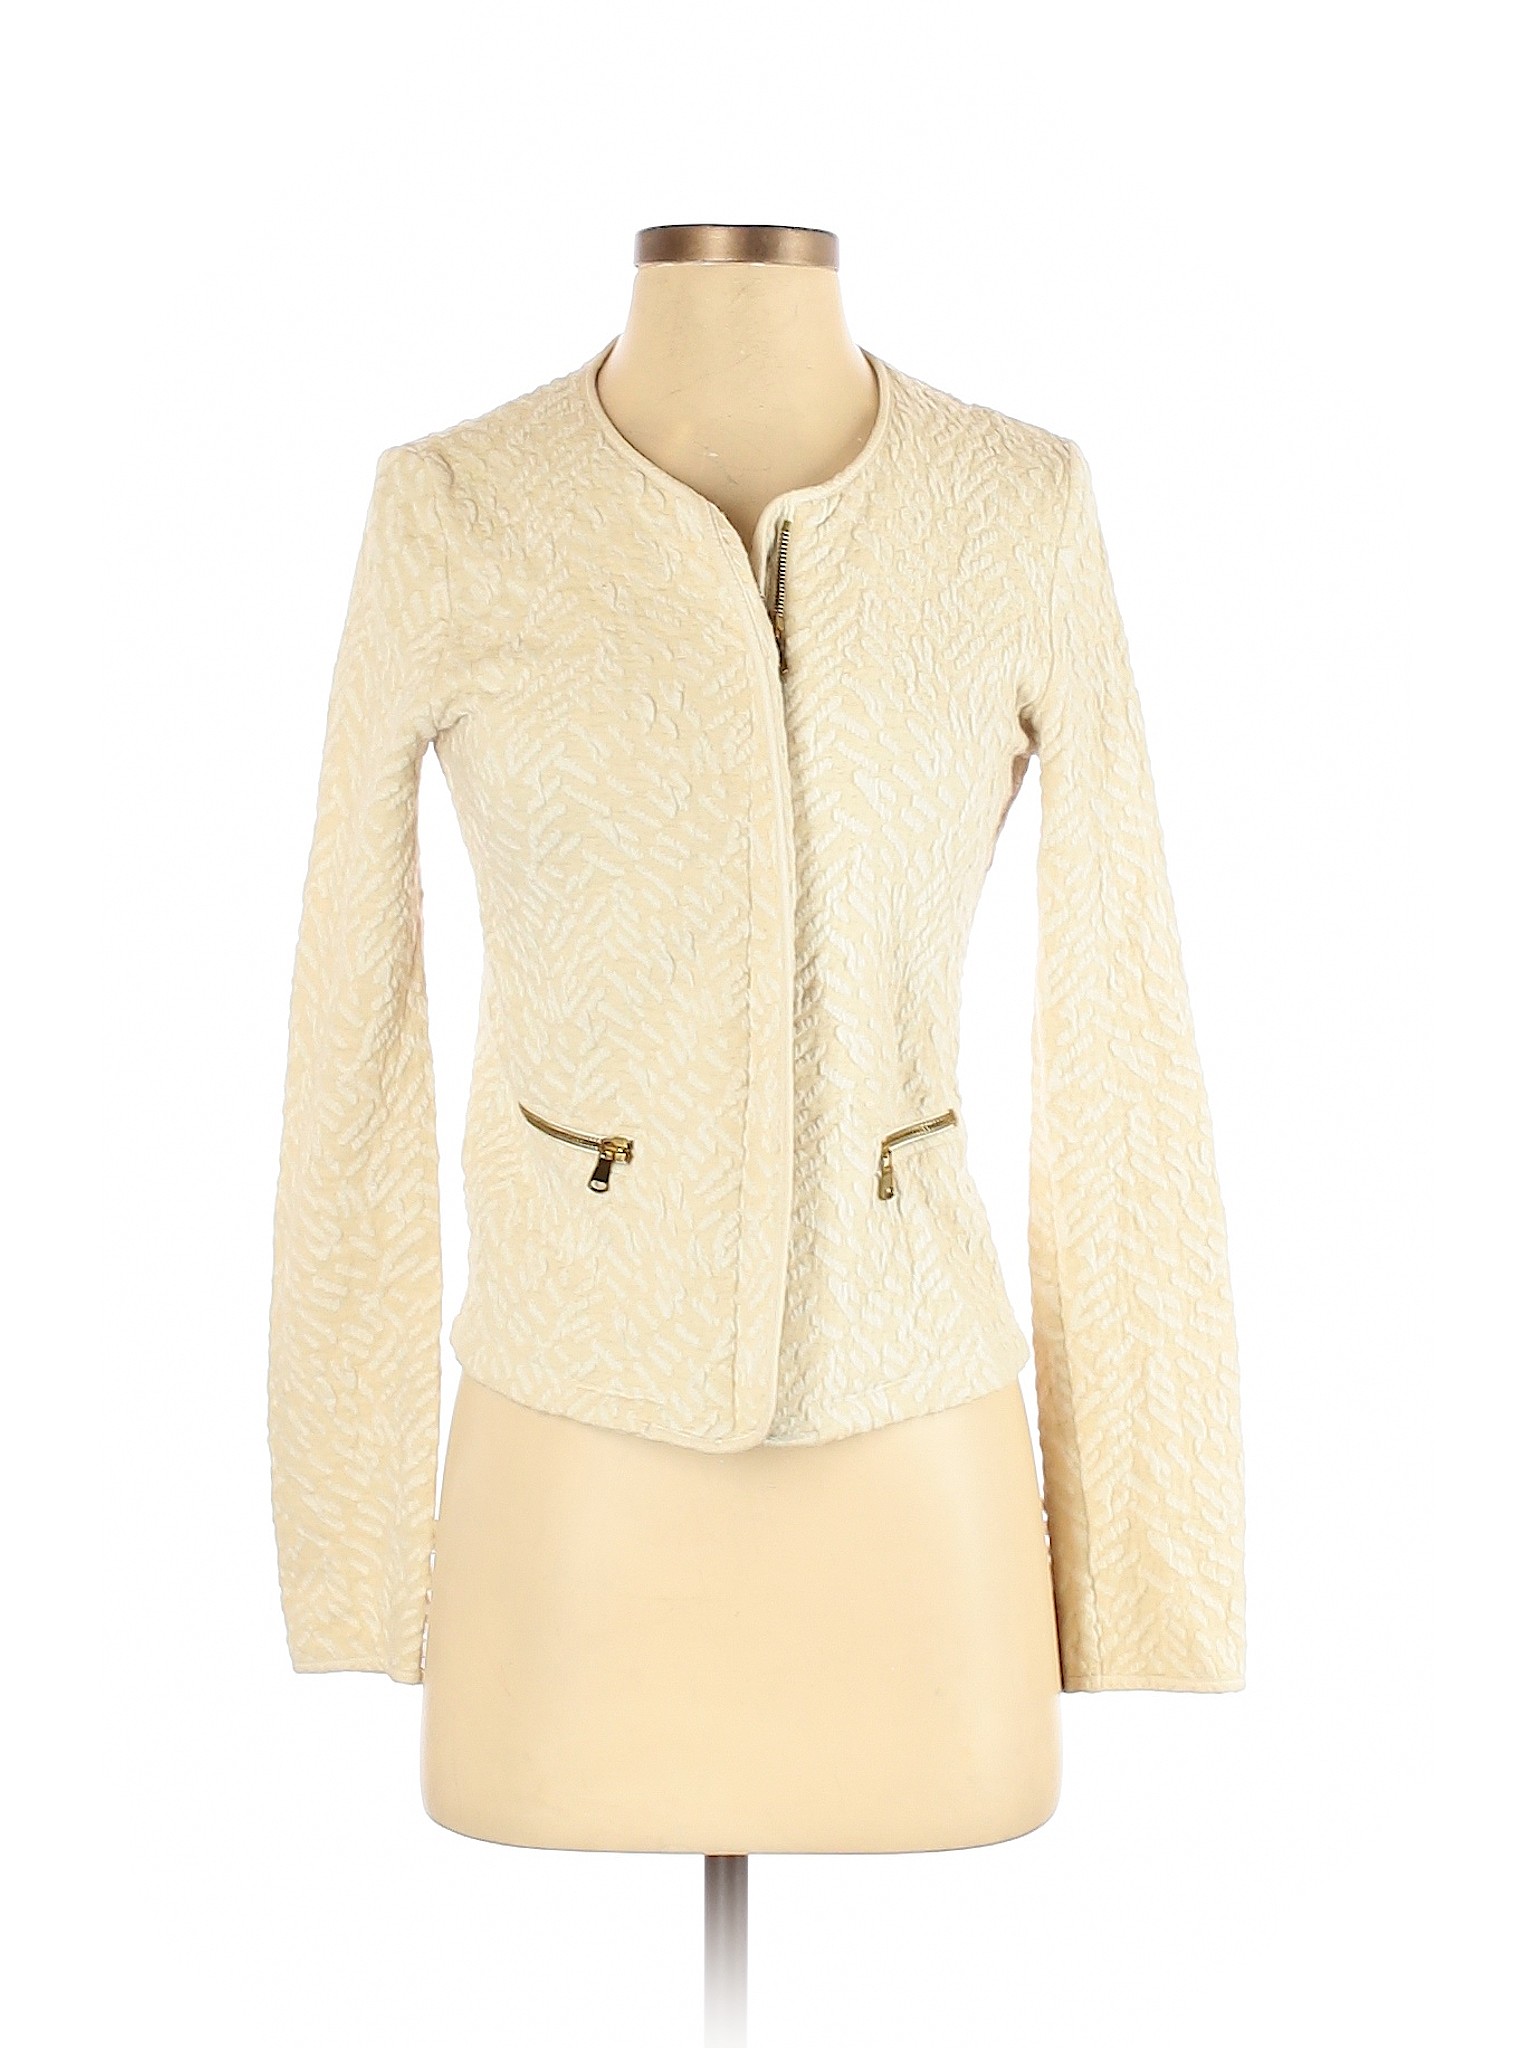 Promod Women Ivory Jacket 8 uk | eBay